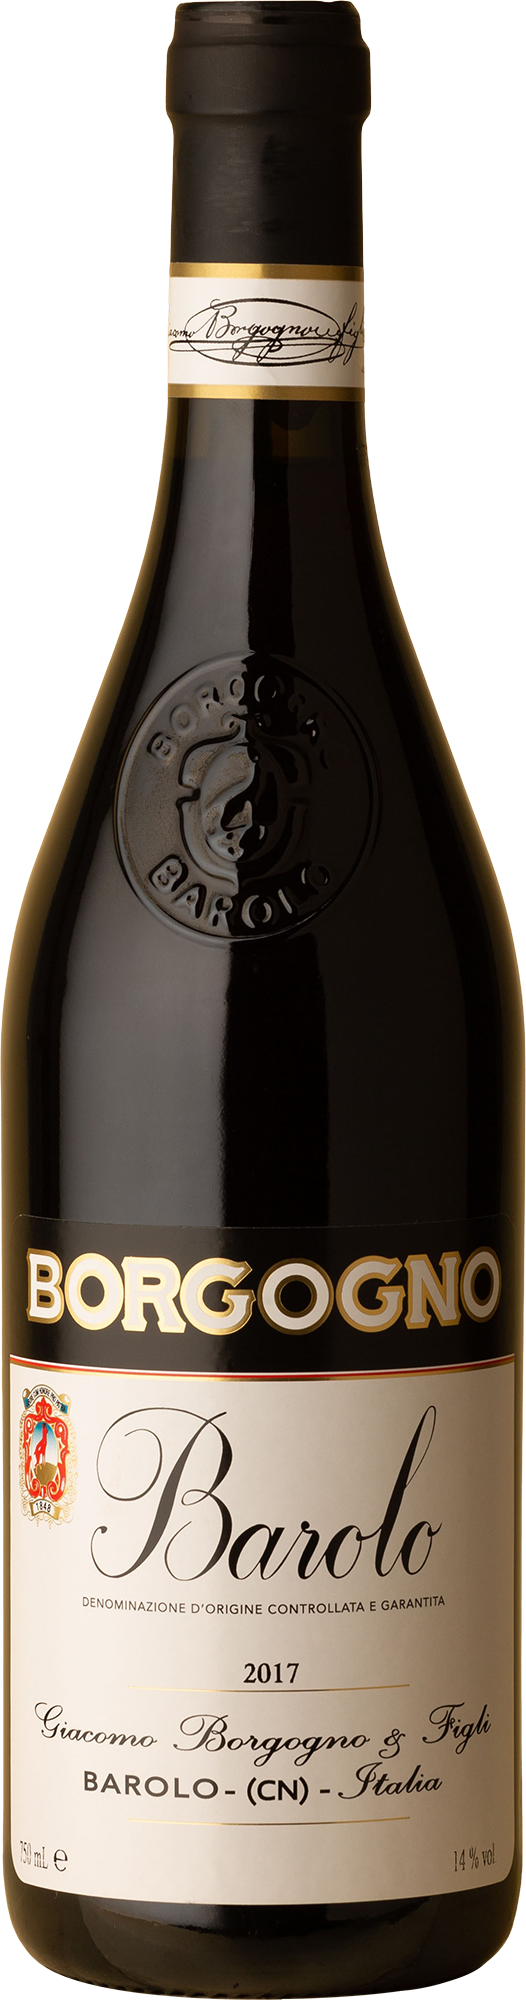 Borgogno - Barolo Classico Nebbiolo 2017 Red Wine